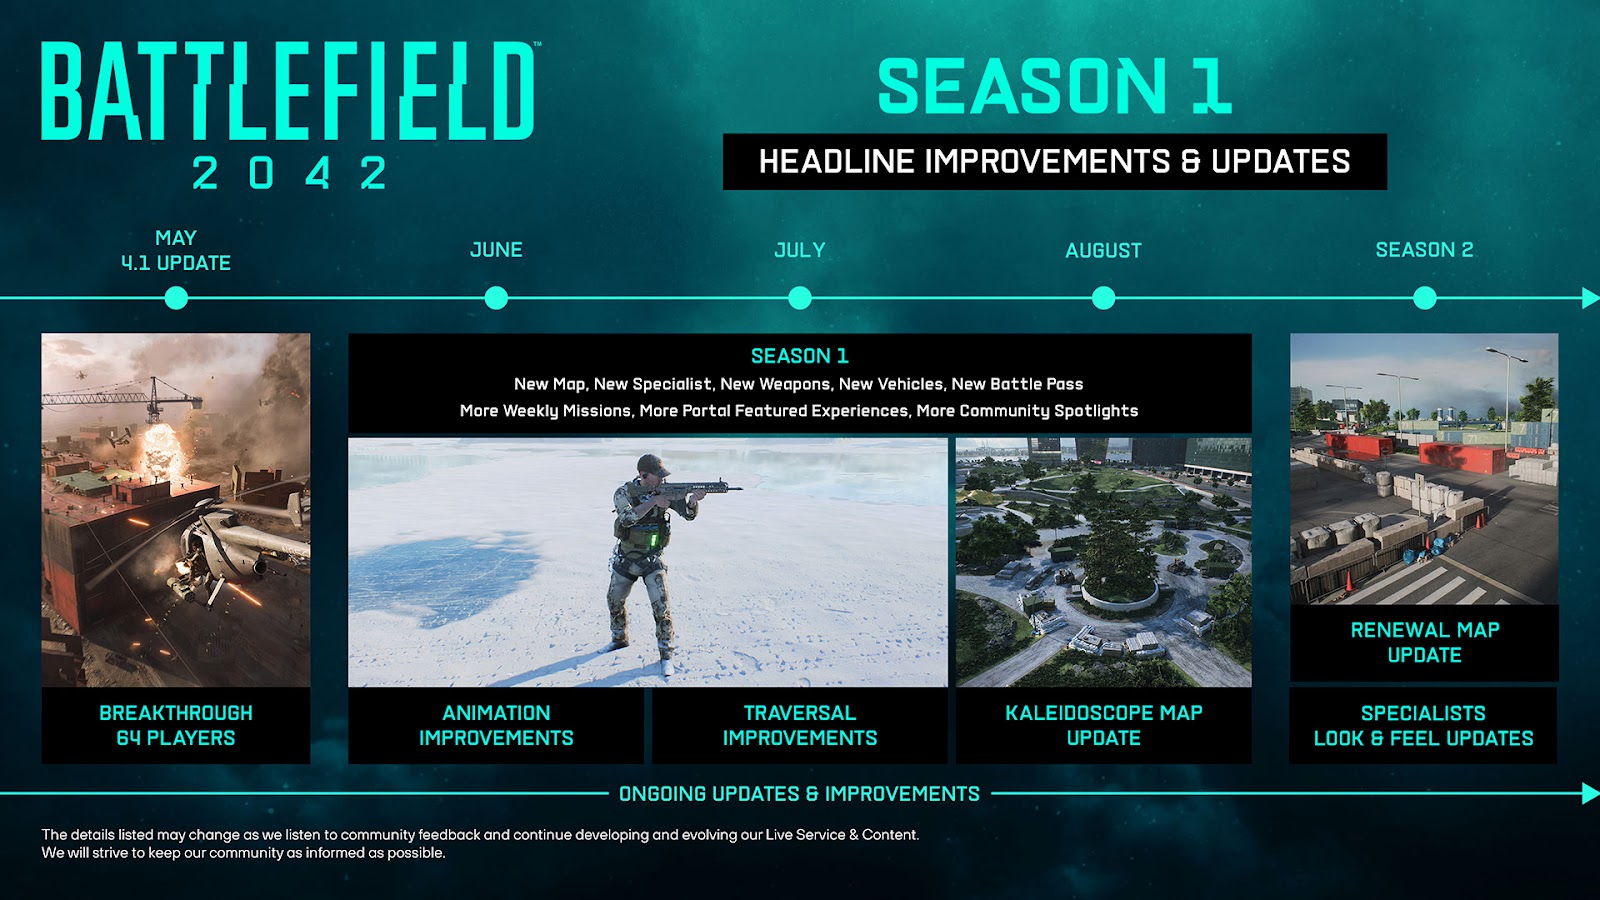 Primeiros detalhes sobre Battlefield 2042 - Temporada 1: Hora Zero, com  lançamento em 9 de junho - Xbox Wire em Português